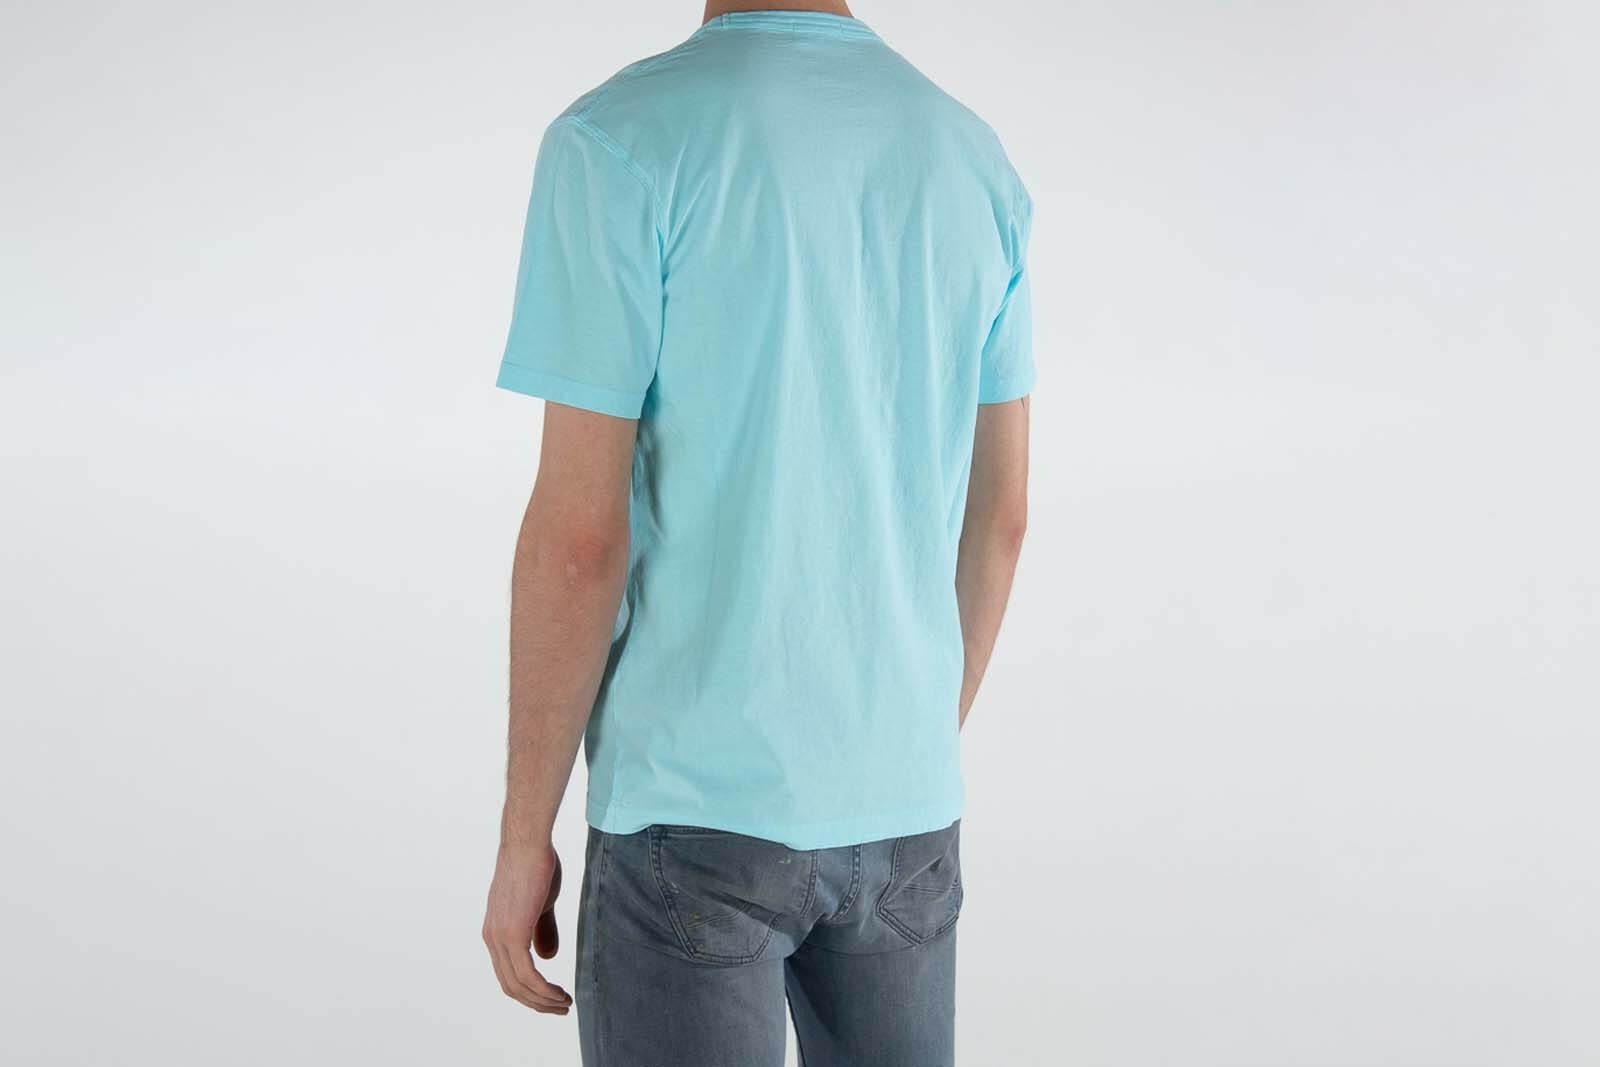 Lichtblauw T-shirt